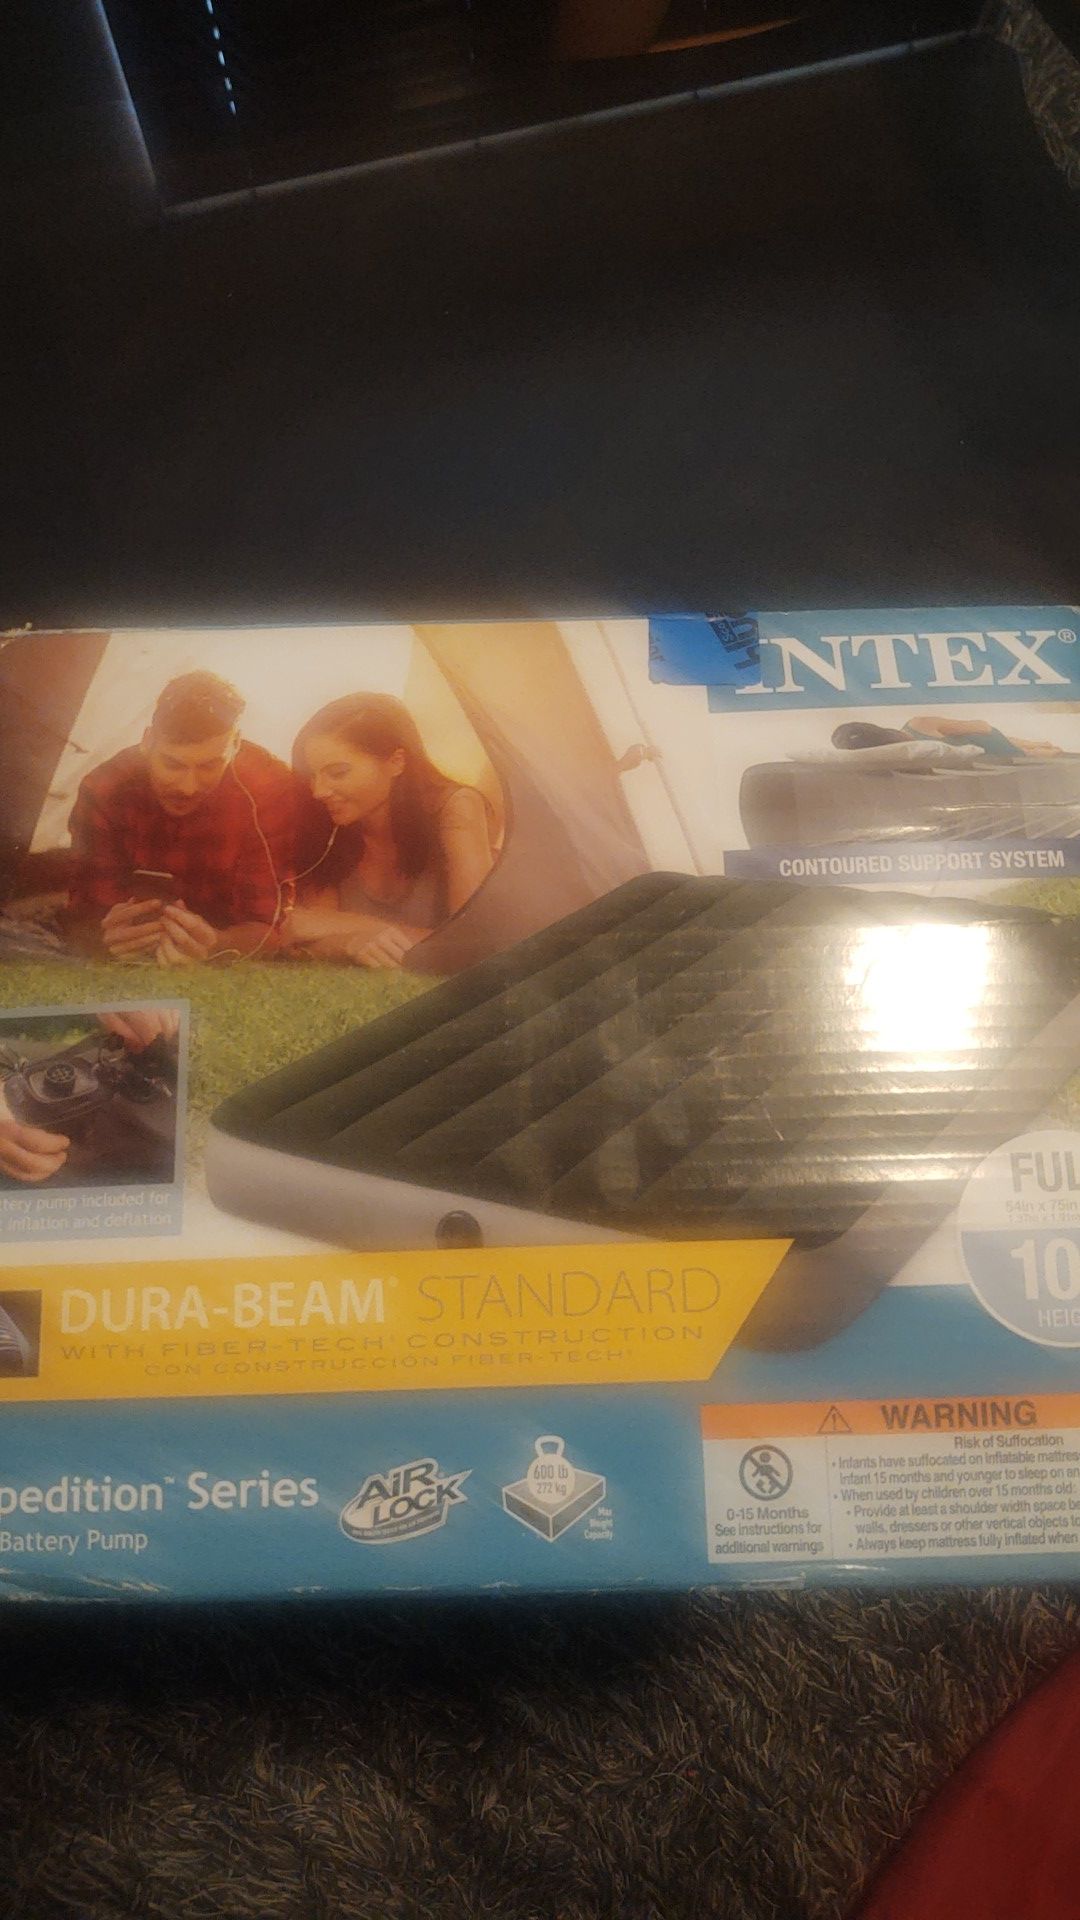 Intex mattress for camping